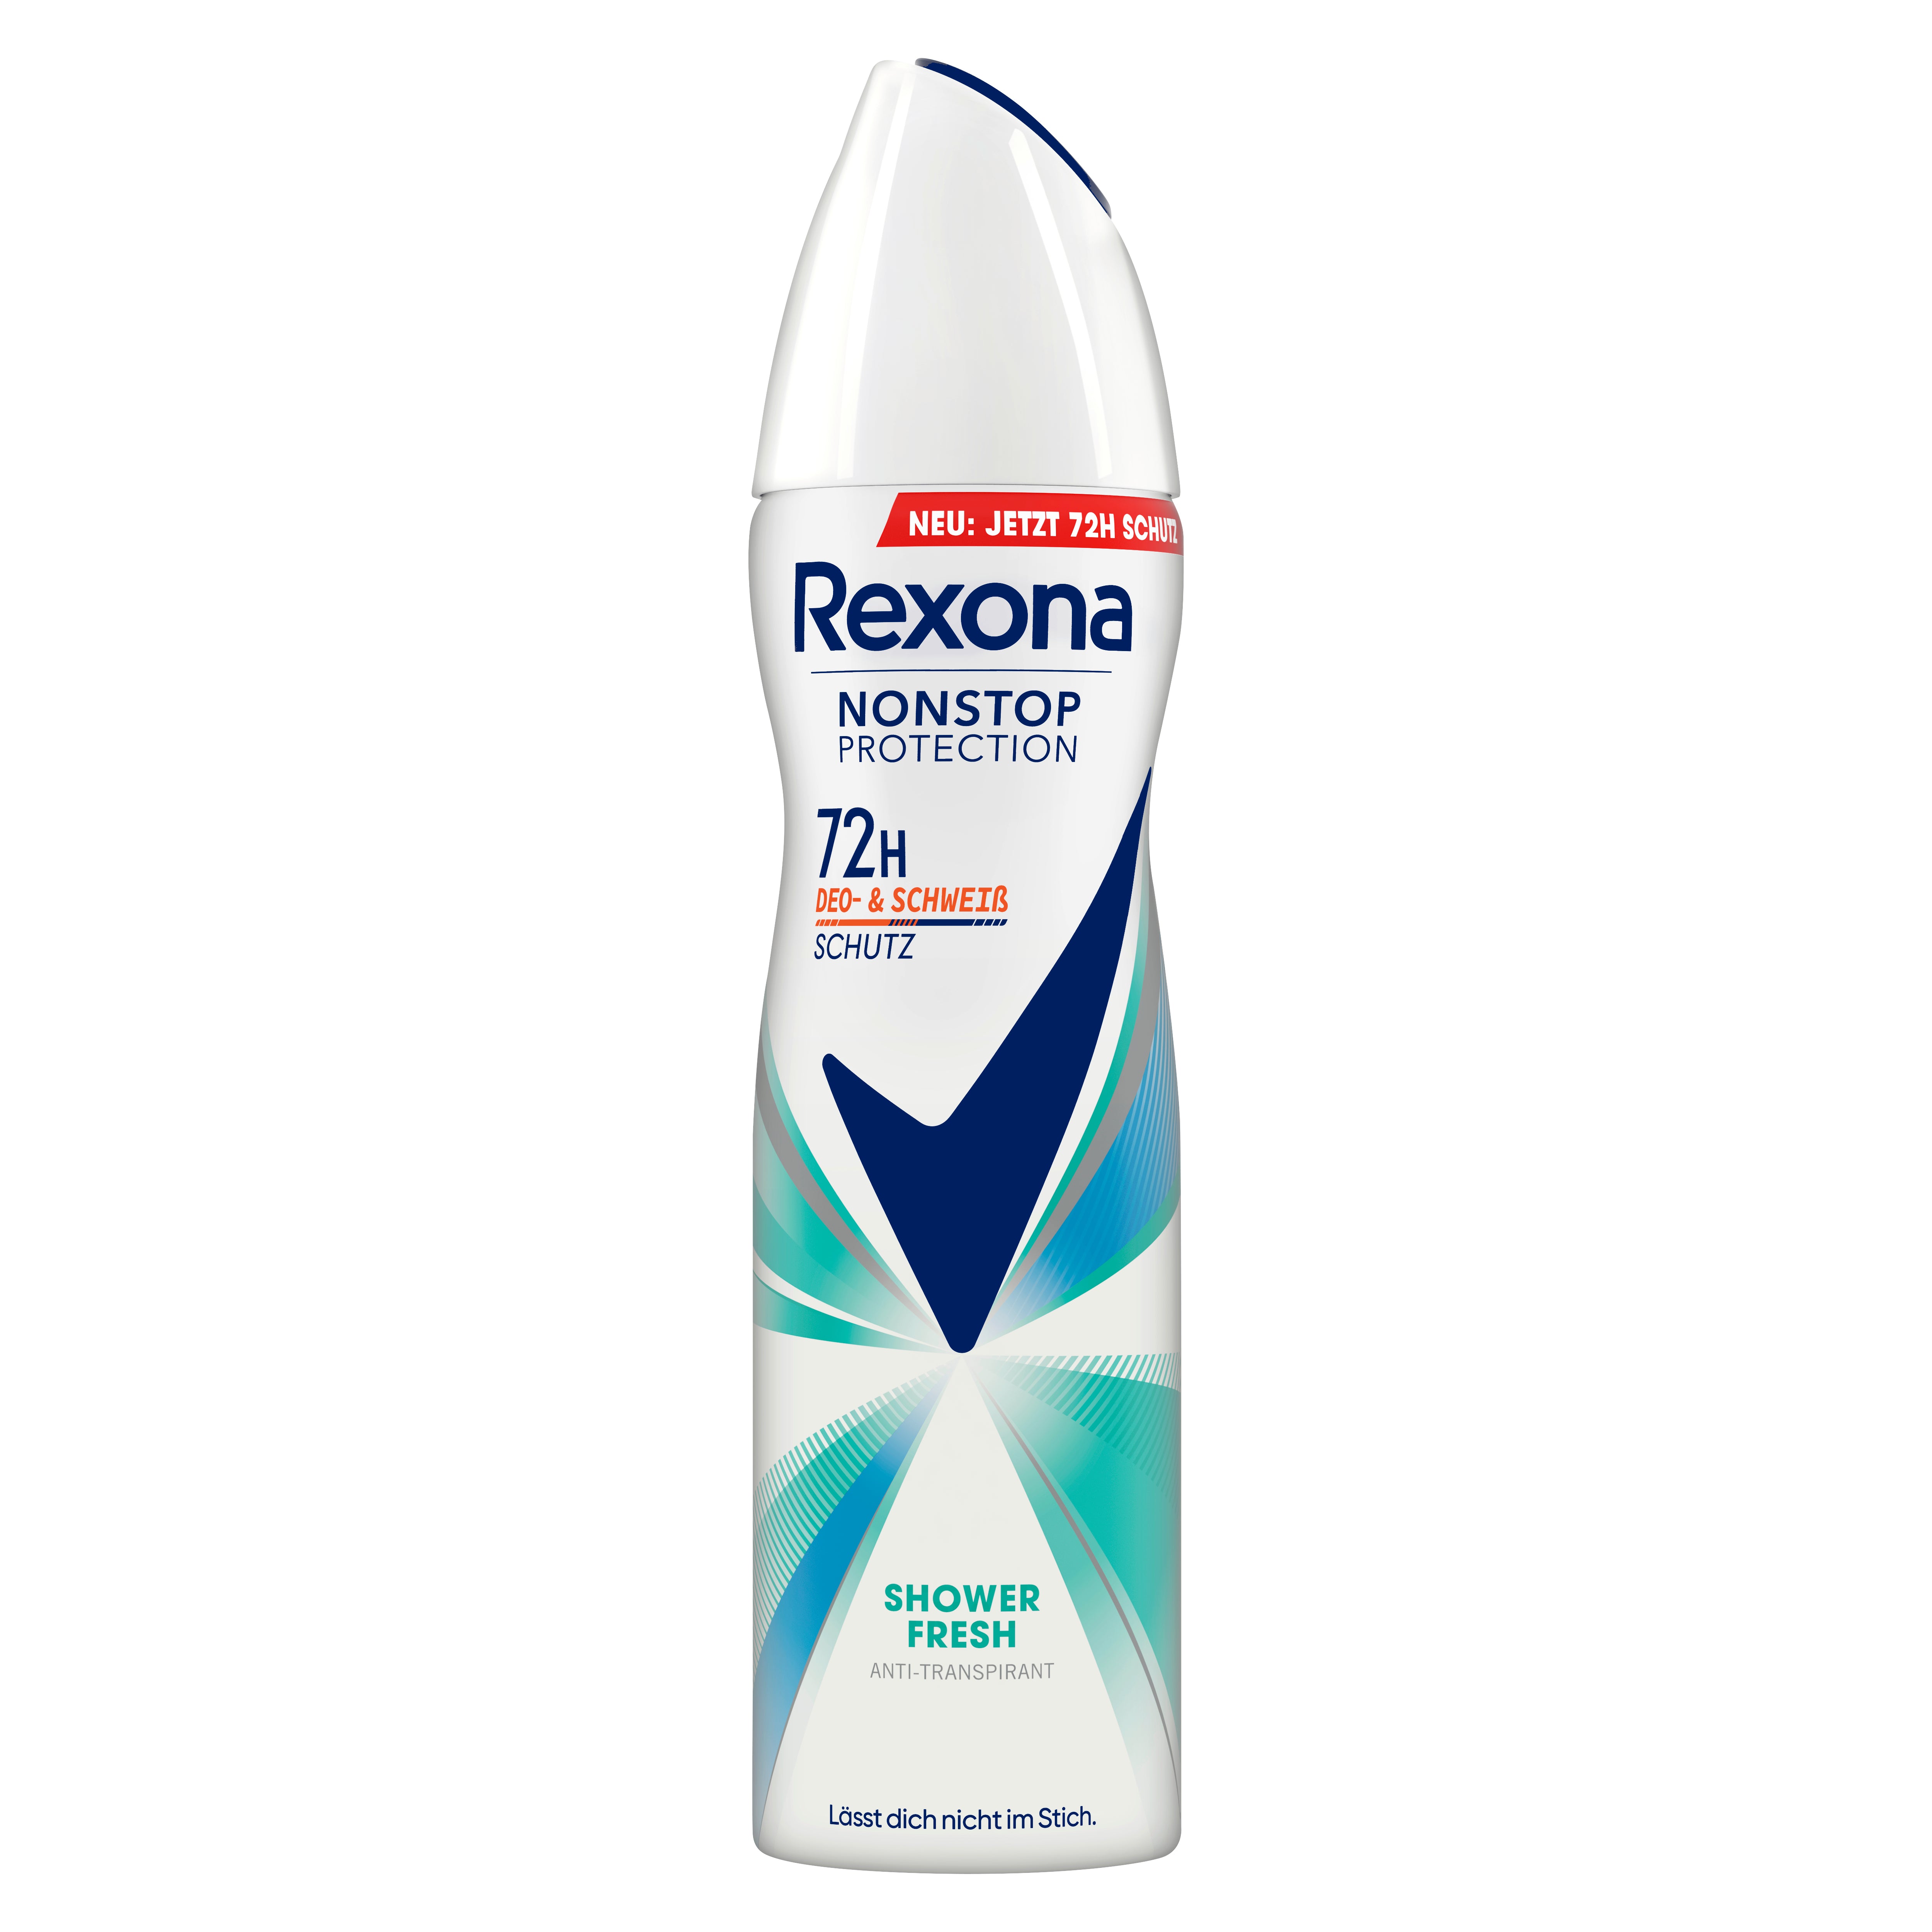 Rexona Nonstop Protection Deospray Shower Fresh Anti Transpirant mit 72 Stunden Schutz vor Schweiß und Körpergeruch 150 ml